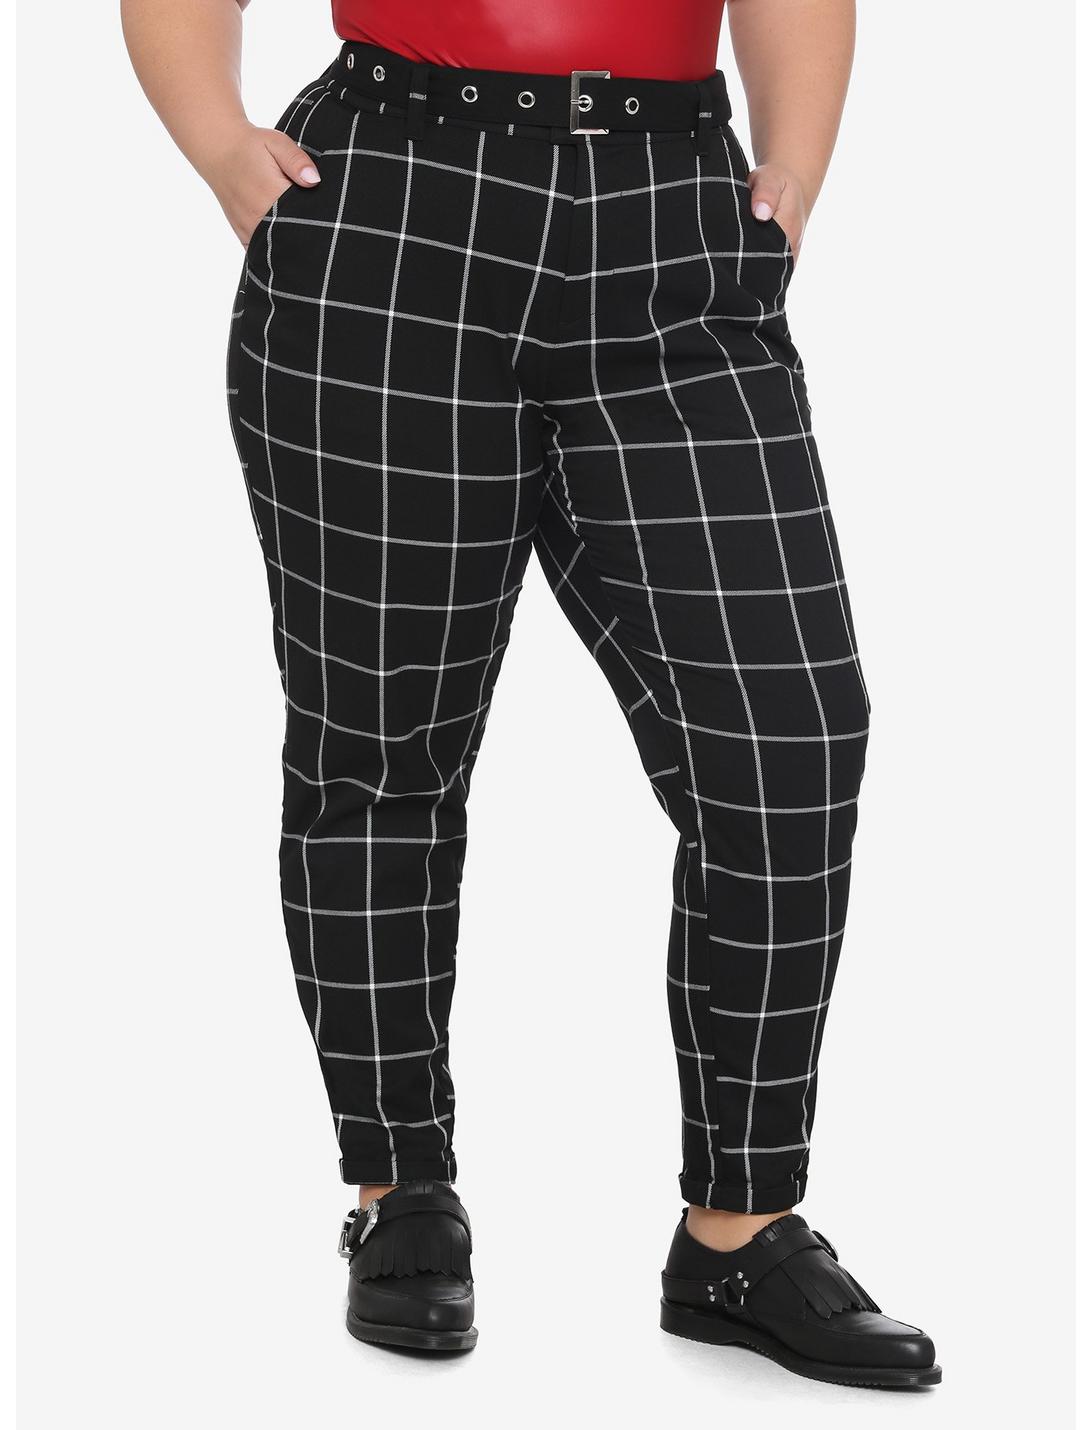 Black & White Grid Plaid Pants With Grommet Belt Plus Size, BLACK, hi-res